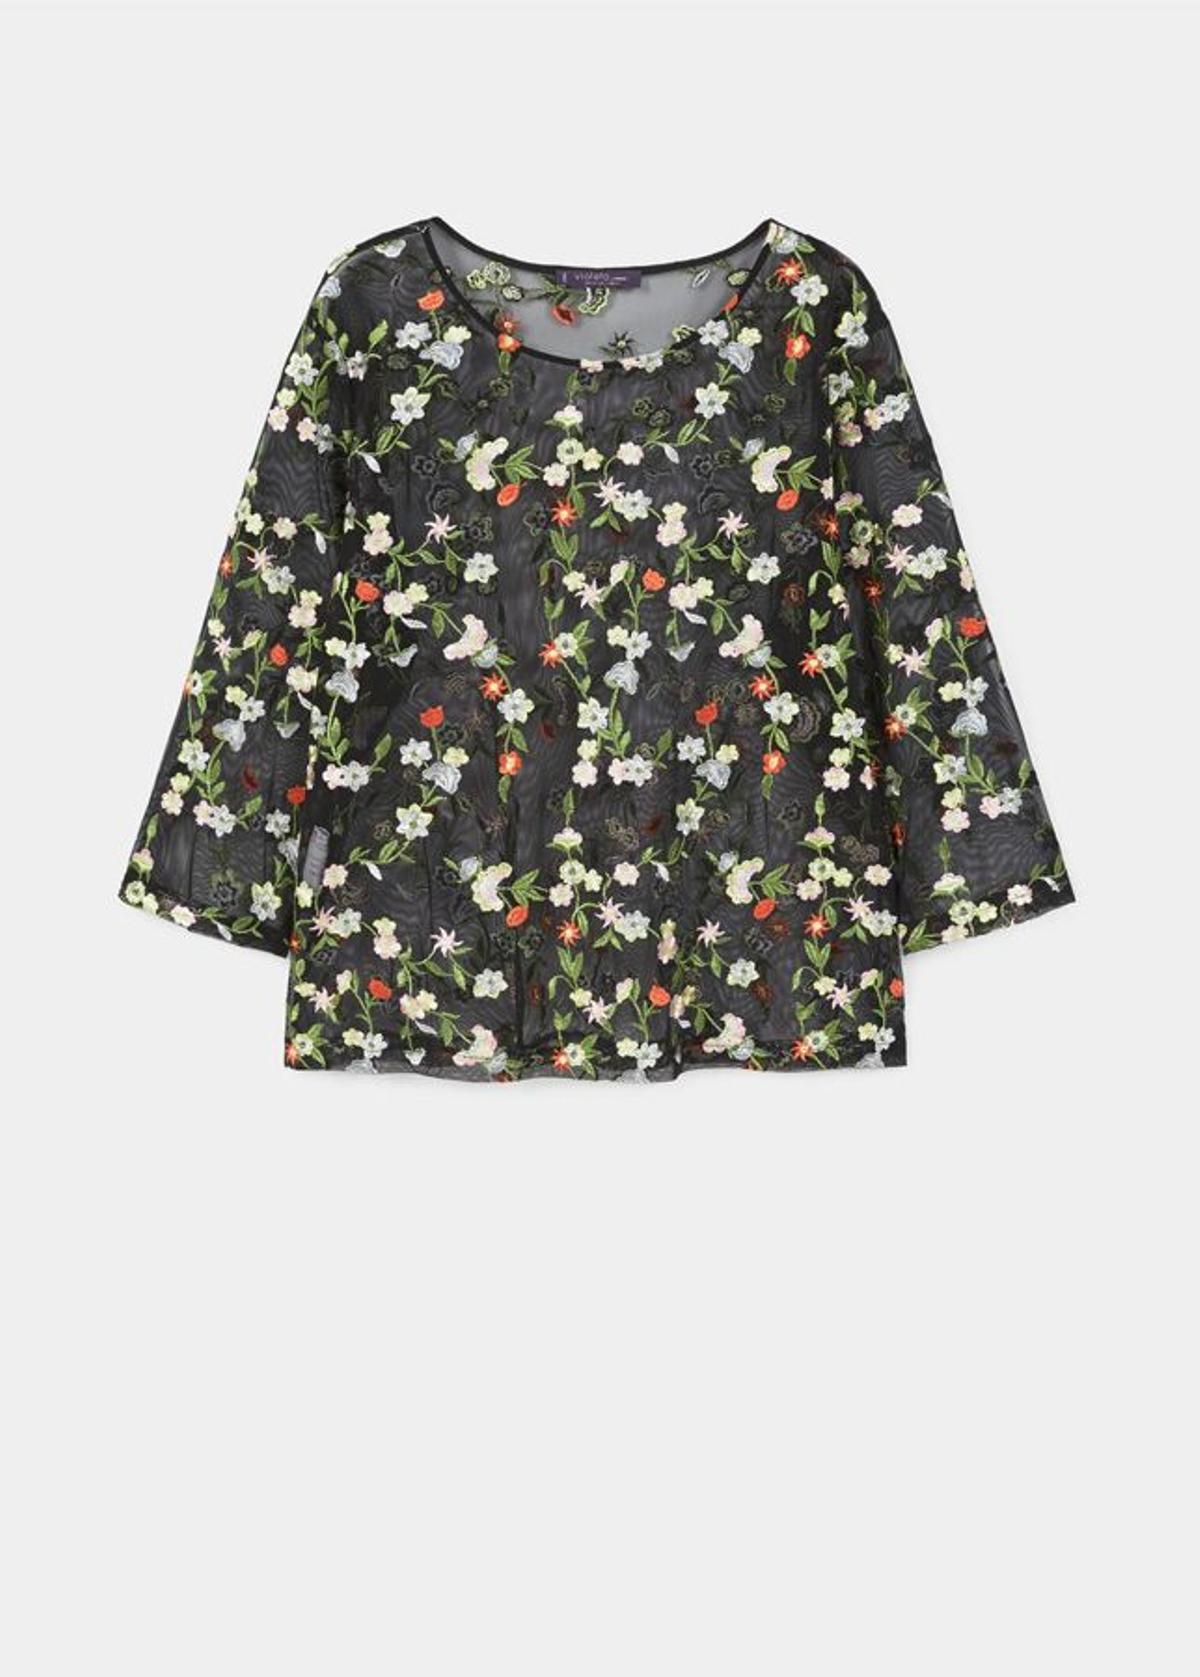 Tentaciones de nueva colección: Blusa de Violeta, Mango